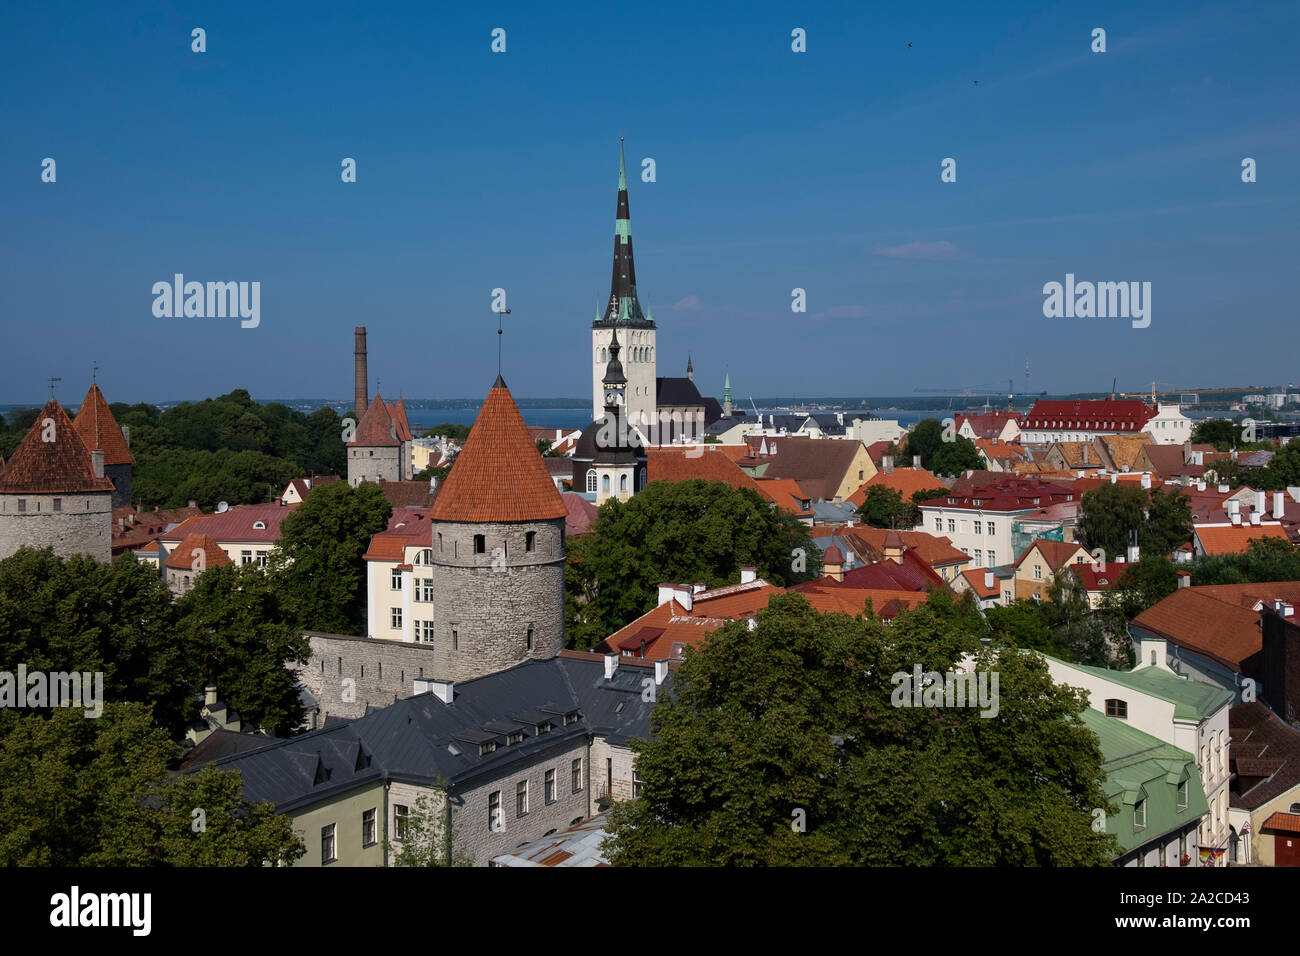 Vue panoramique de l'église de saint Olaf et les toits de la vieille ville de Tallinn, Estonie Banque D'Images